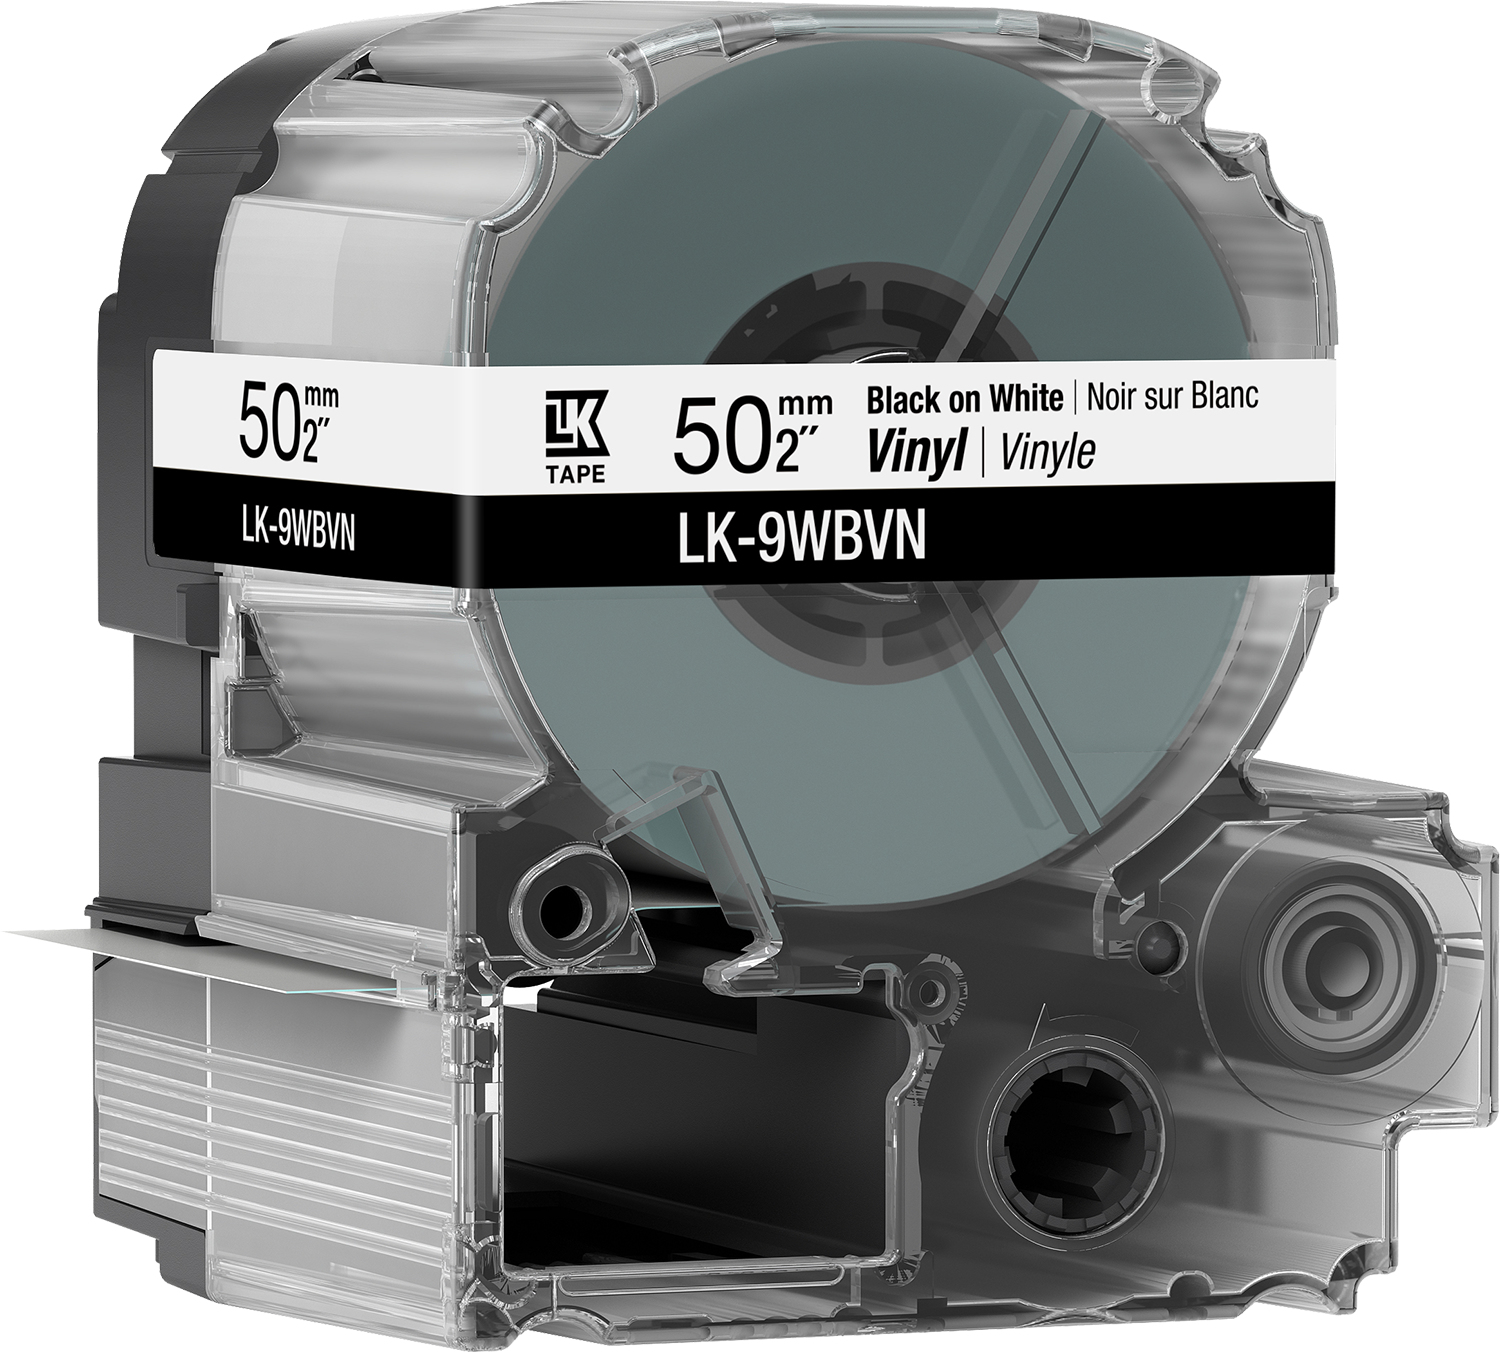 Epson LK-9YBVN label-making tape Black on white